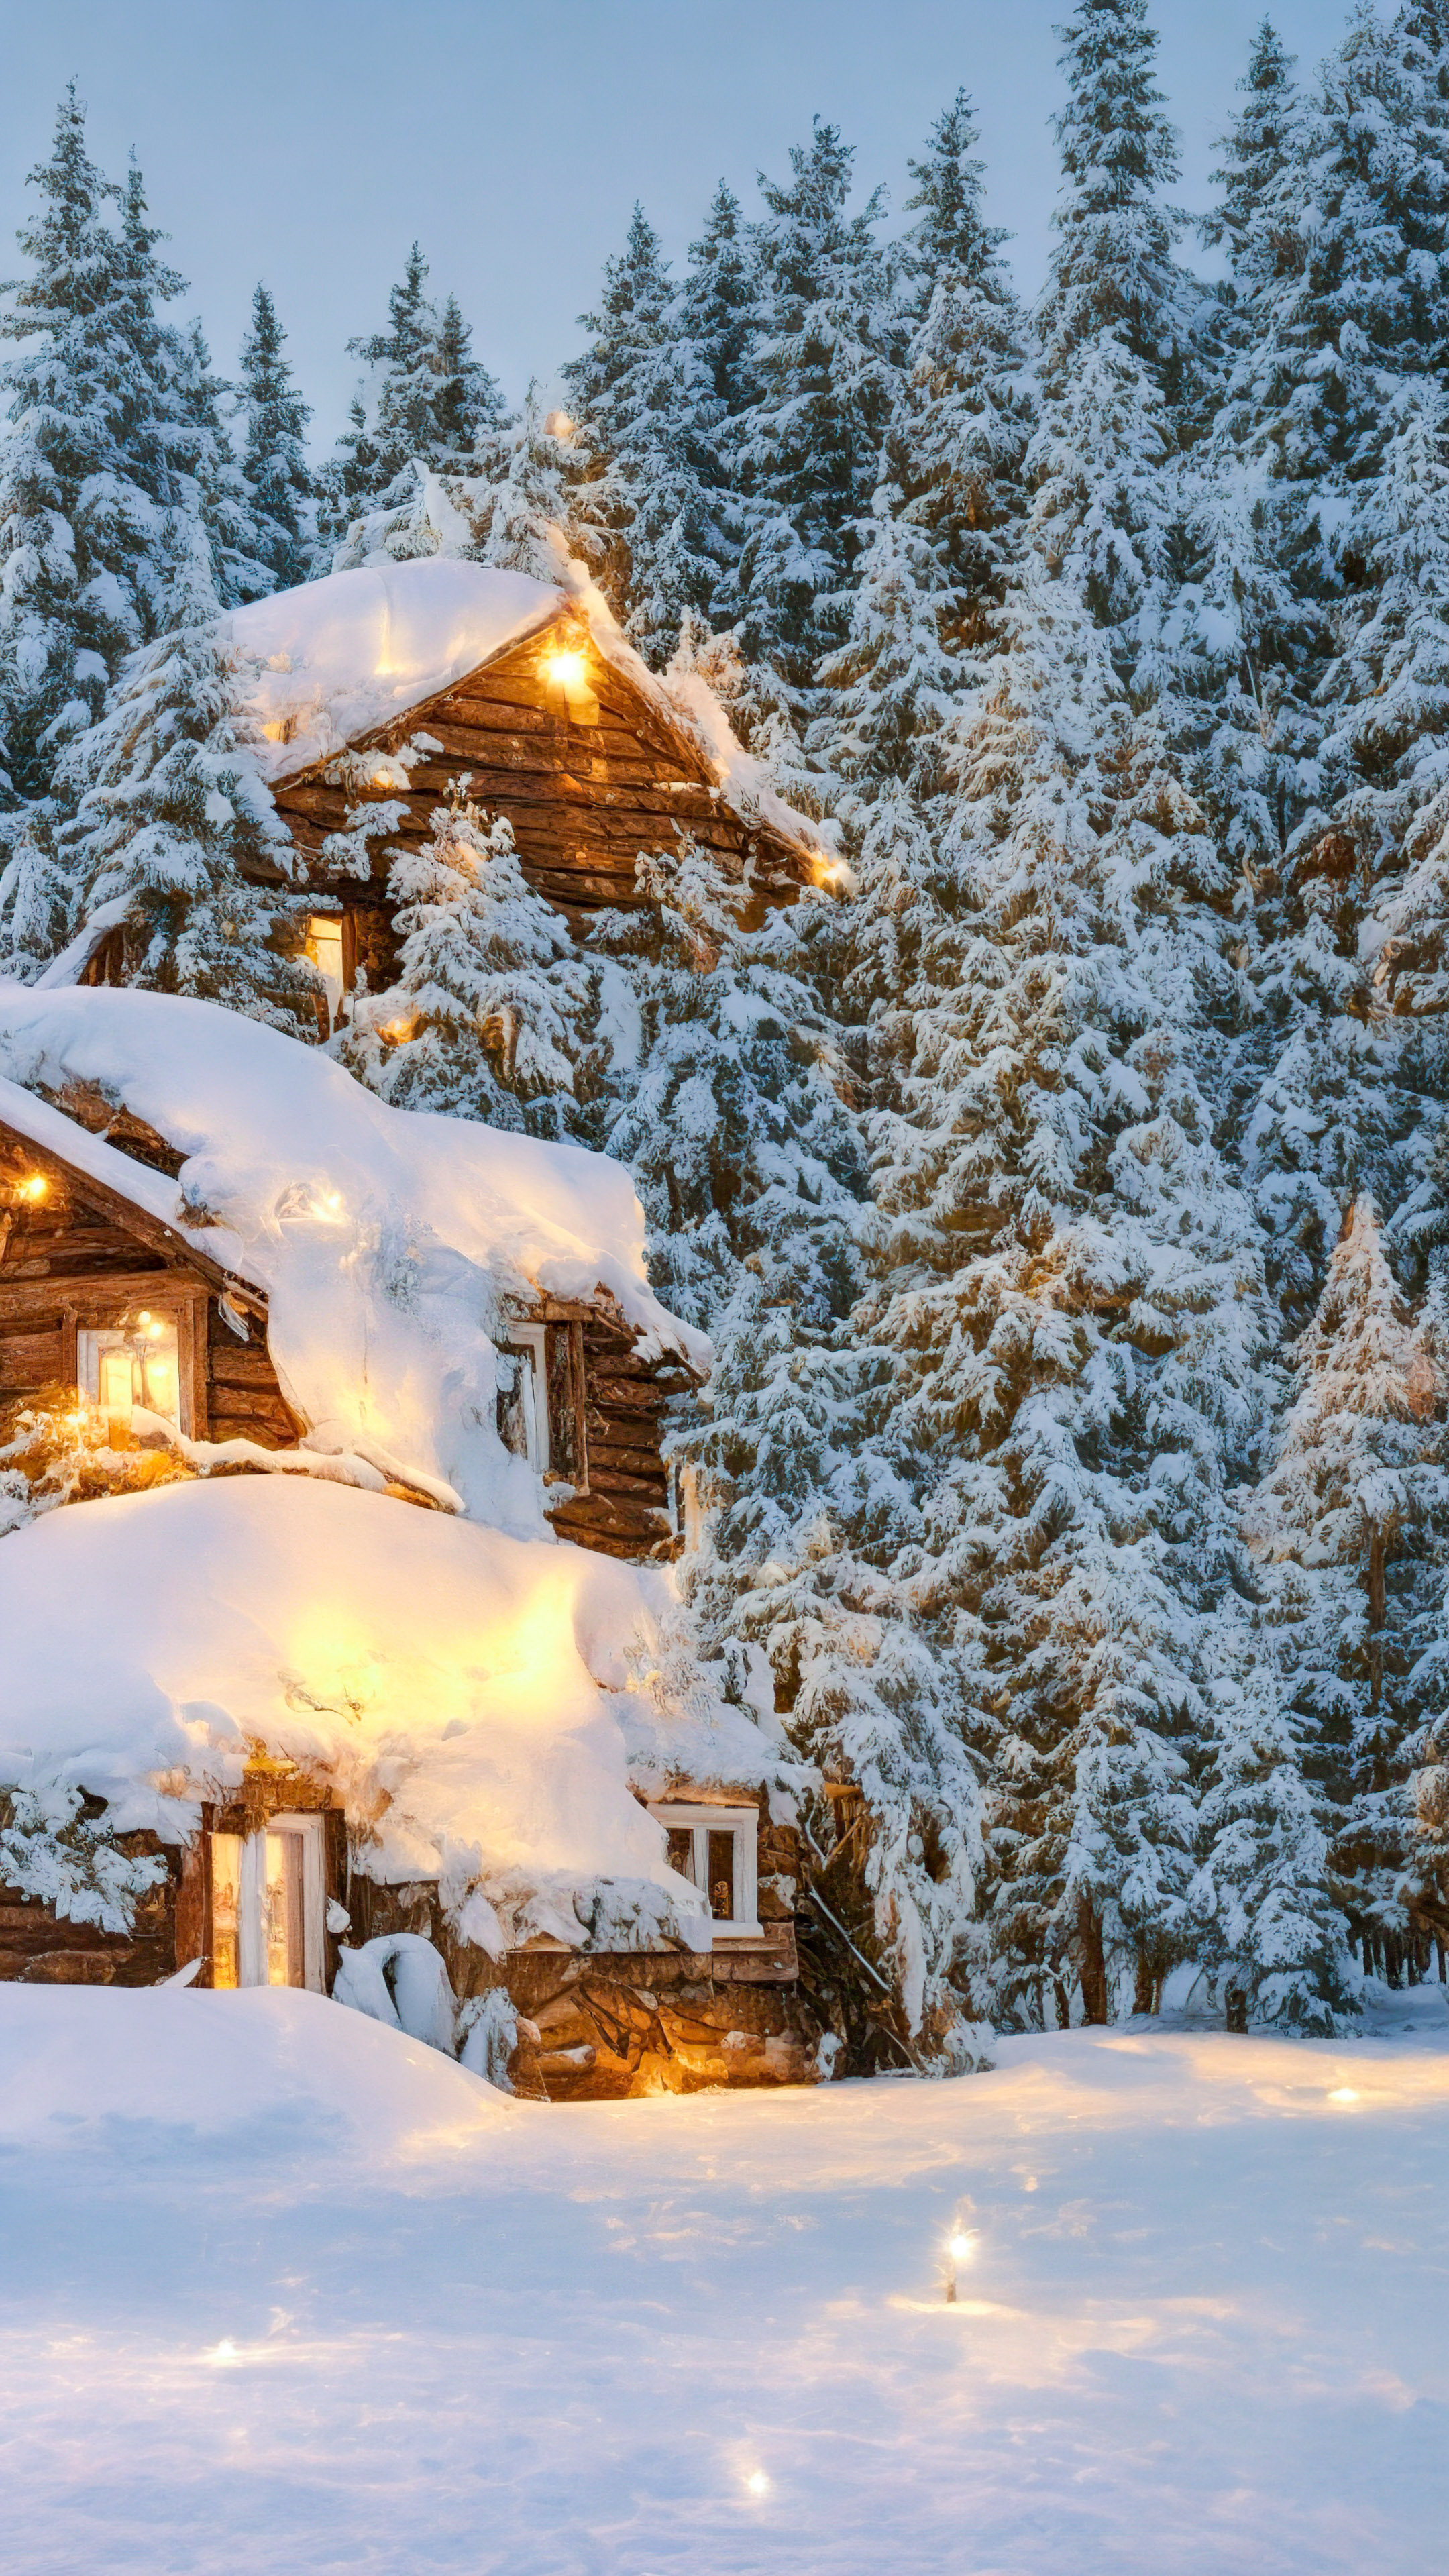 Vivez la tranquillité d'un hiver serein, où des arbres couverts de neige et une cabane confortable ornée de lumières de fête prennent vie dans notre magnifique fond d'écran de nature en 4K.